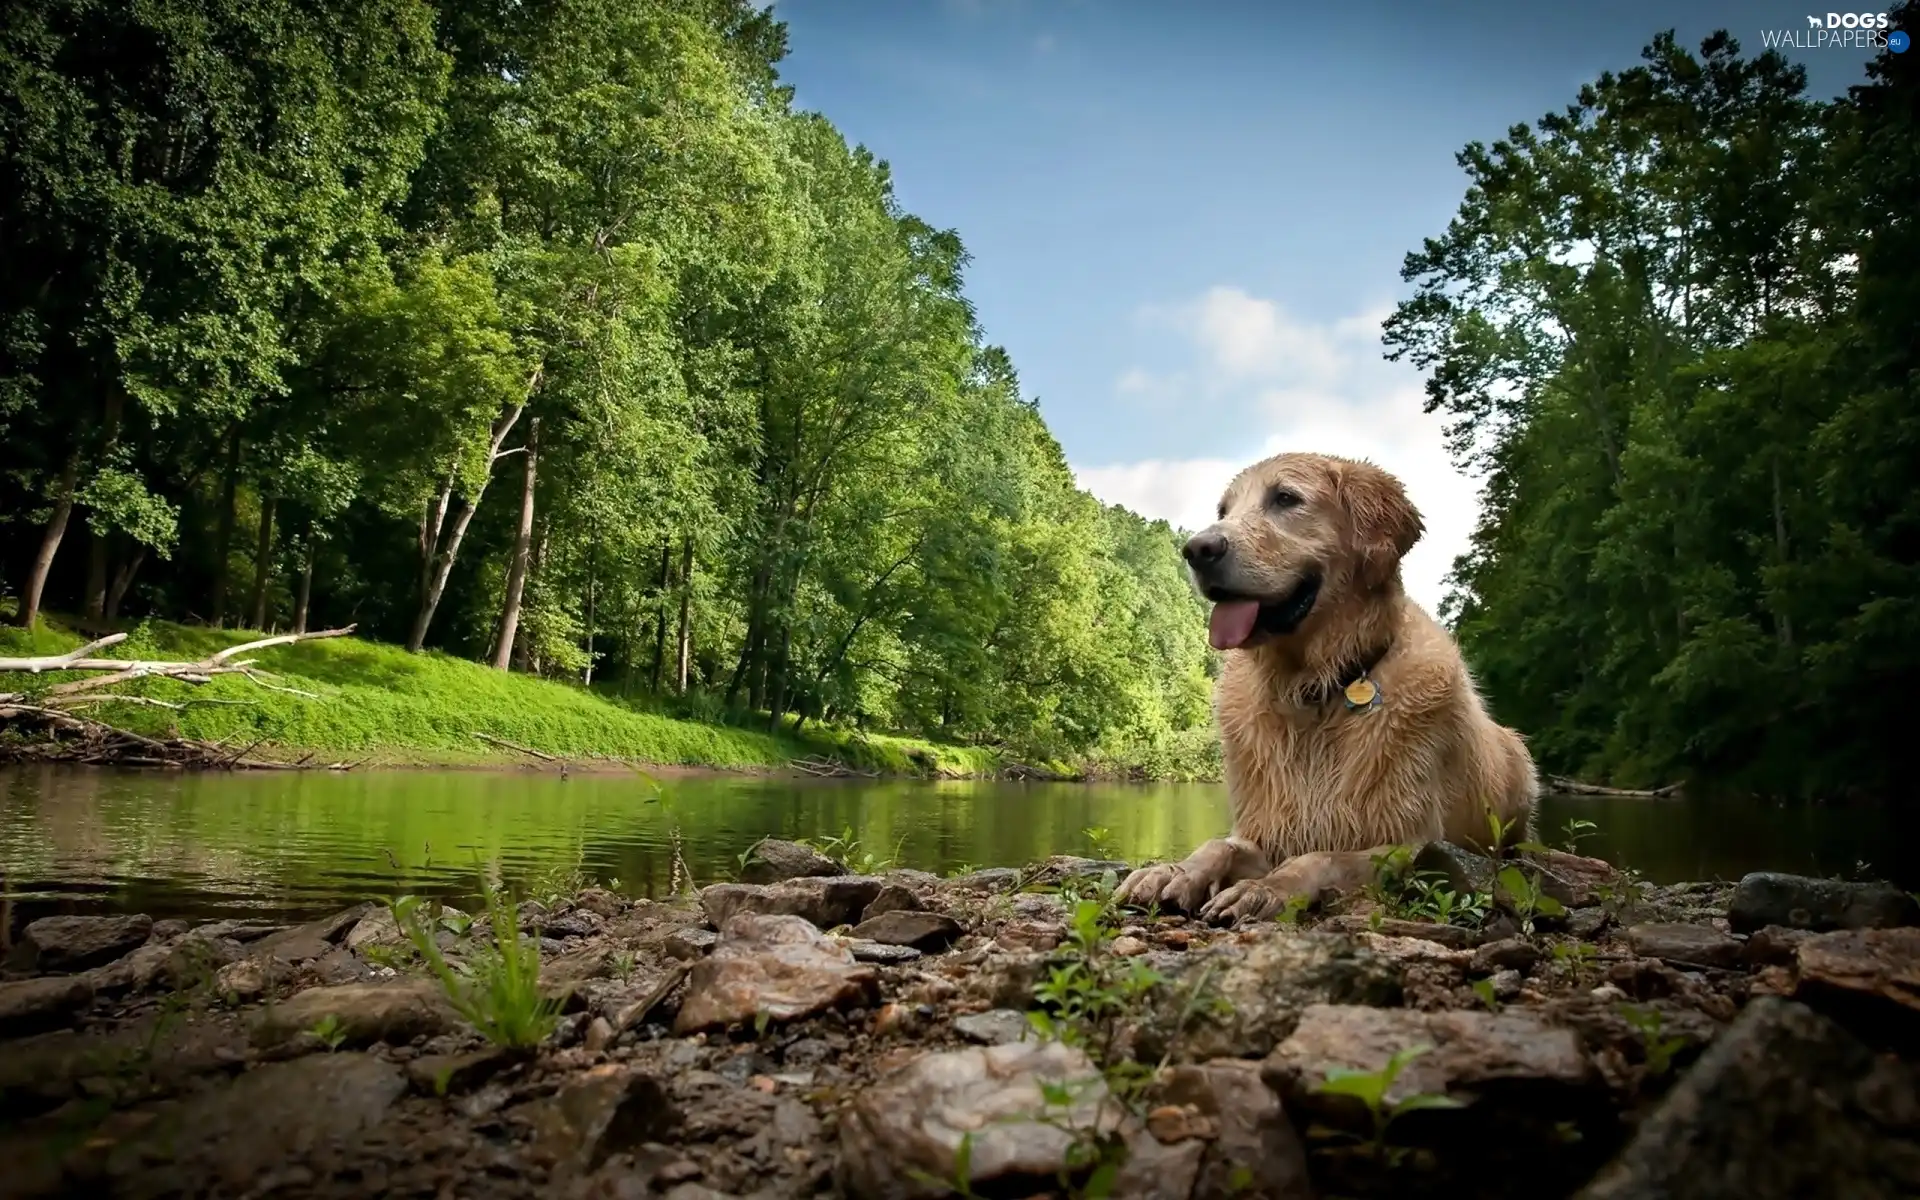 River, forest, dog